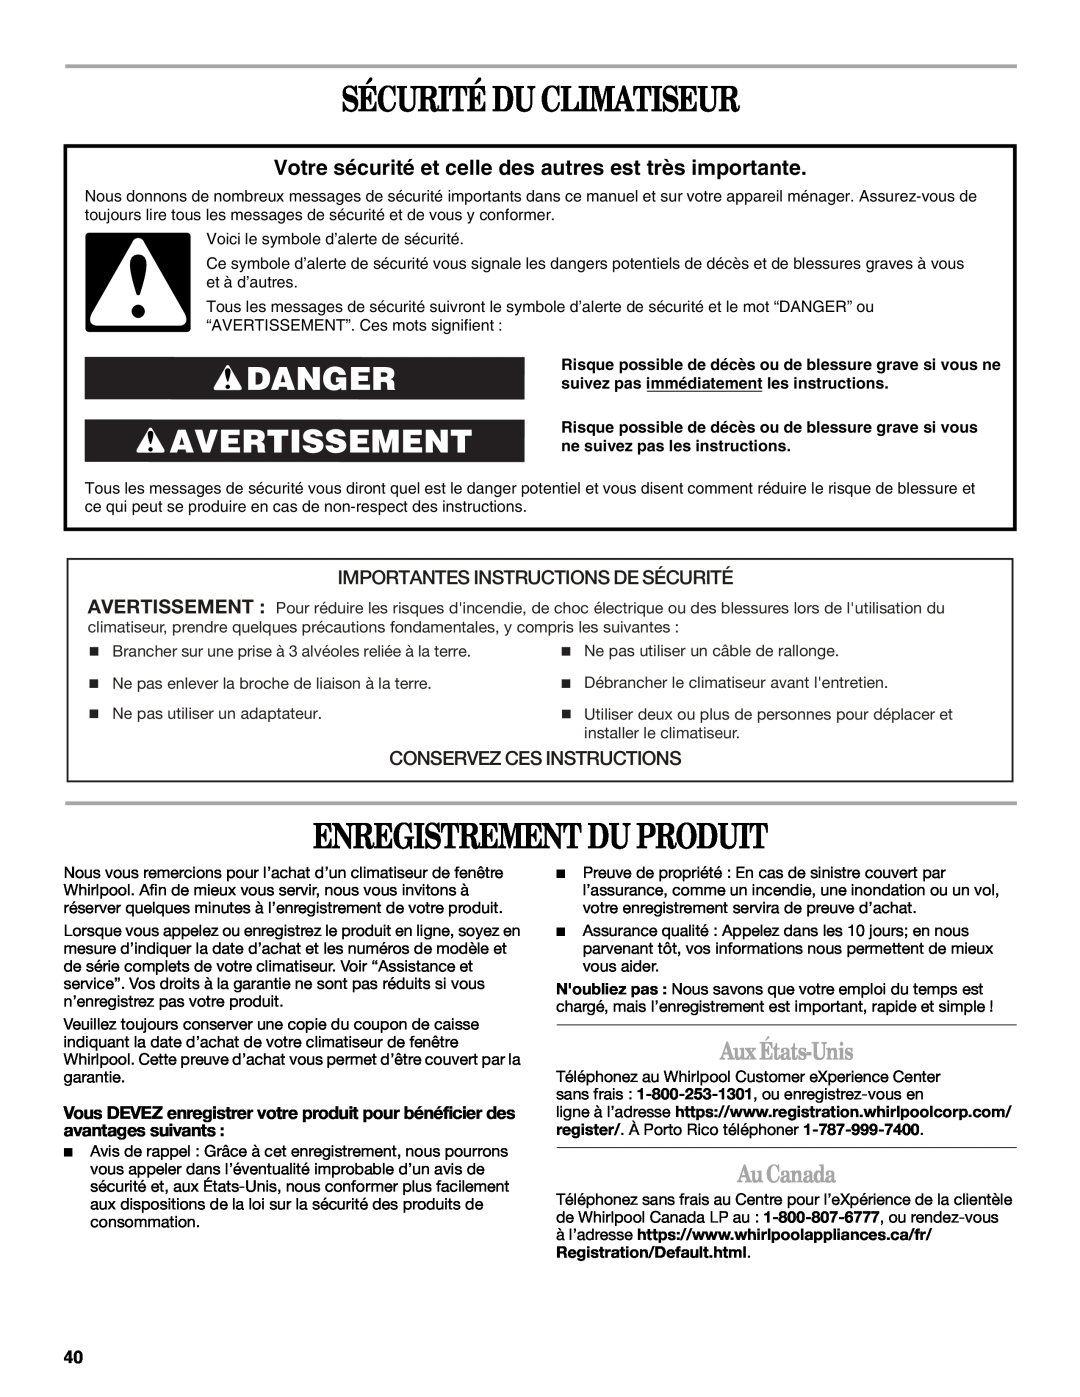 Whirlpool 66161279 Sécurité Du Climatiseur, Enregistrement Du Produit, Danger Avertissement, Aux États-Unis, Au Canada 